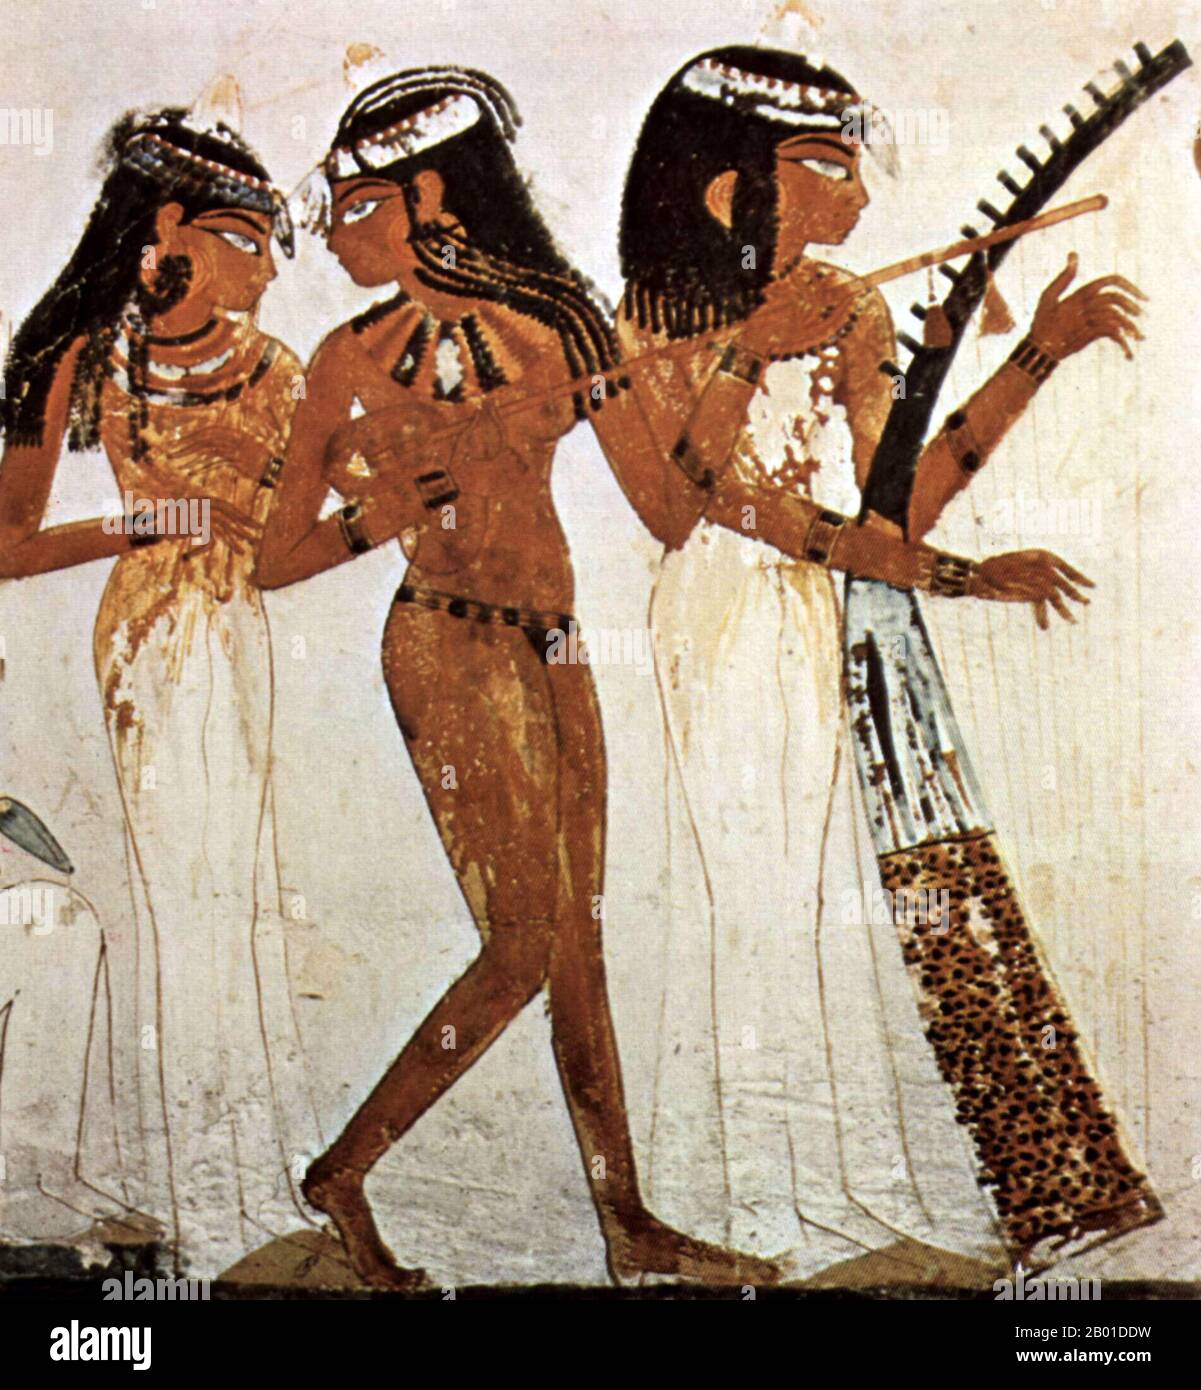 Egitto: Tre musicisti femminili, meglio conosciuti come 'musicisti di Amun', Tomba di Nakht, 18th dinastia (1422-1411 a.C.), Tebe. La musica egiziana è stata parte integrante della cultura egiziana fin dai tempi antichi. Gli antichi Egiziani accreditarono a uno dei loro dei Thoth l'invenzione della musica, che Osiride a sua volta utilizzò come parte del suo sforzo di civilizzare il mondo. Le prime prove materiali e rappresentative degli strumenti musicali egiziani risalgono al periodo predinastico, ma le prove sono attestate in modo più sicuro nel Vecchio Regno quando si suonavano arpe, flauti e doppi clarinetti. Foto Stock